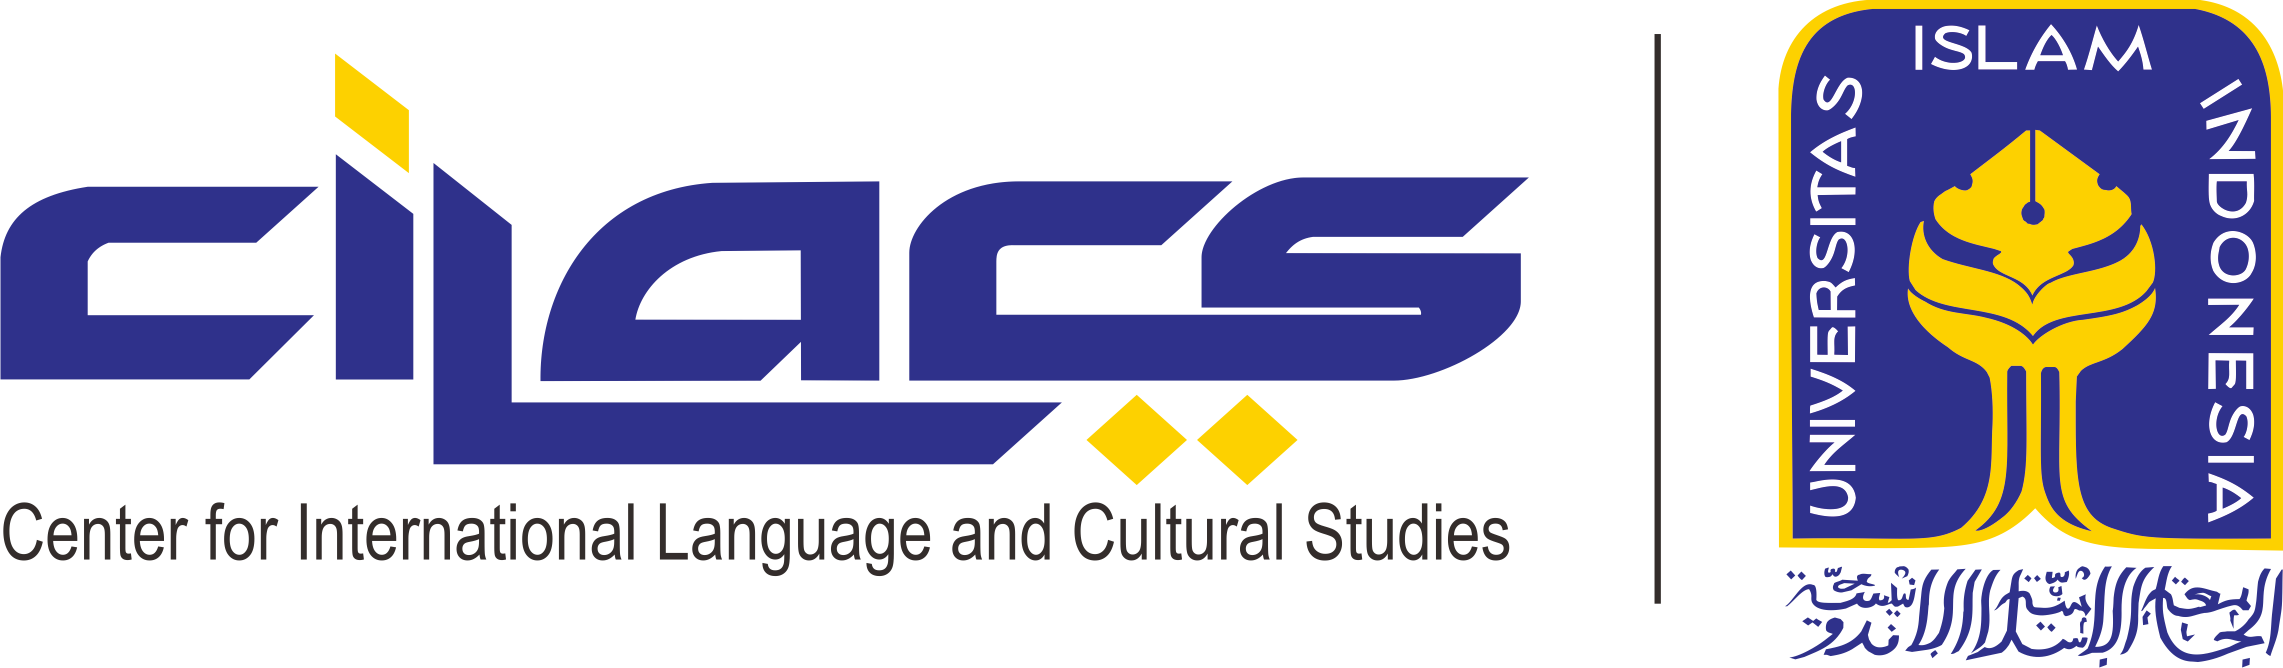 Logo Cilacs